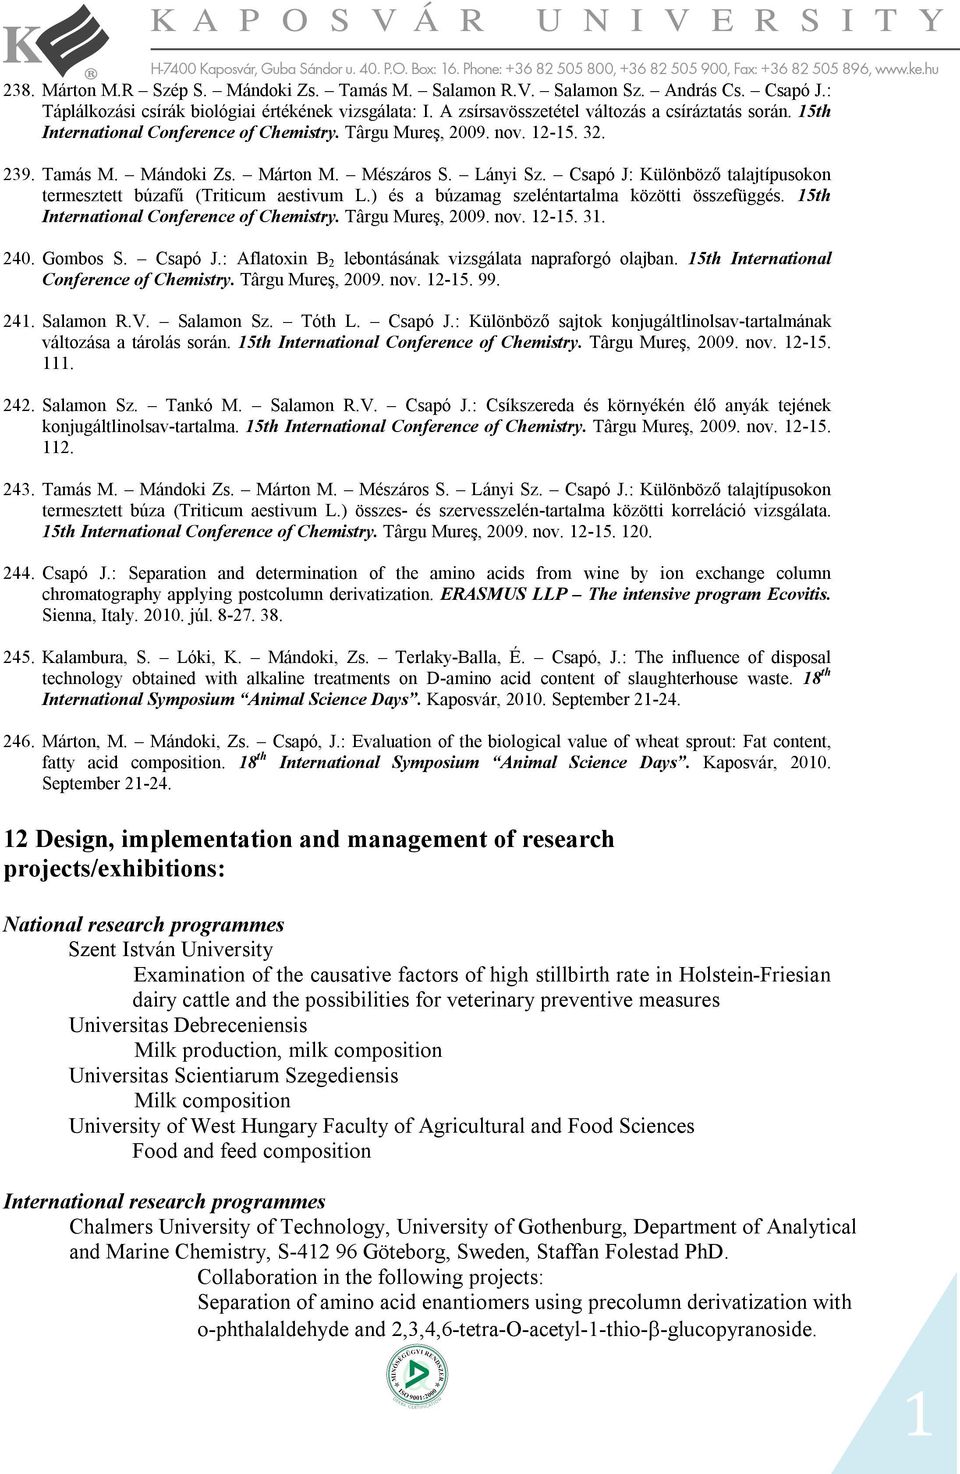 Csapó J: Különböző talajtípusokon termesztett búzafű (Triticum aestivum L.) és a búzamag szeléntartalma közötti összefüggés. 15th International Conference of Chemistry. Târgu Mureş, 2009. nov. 12-15.